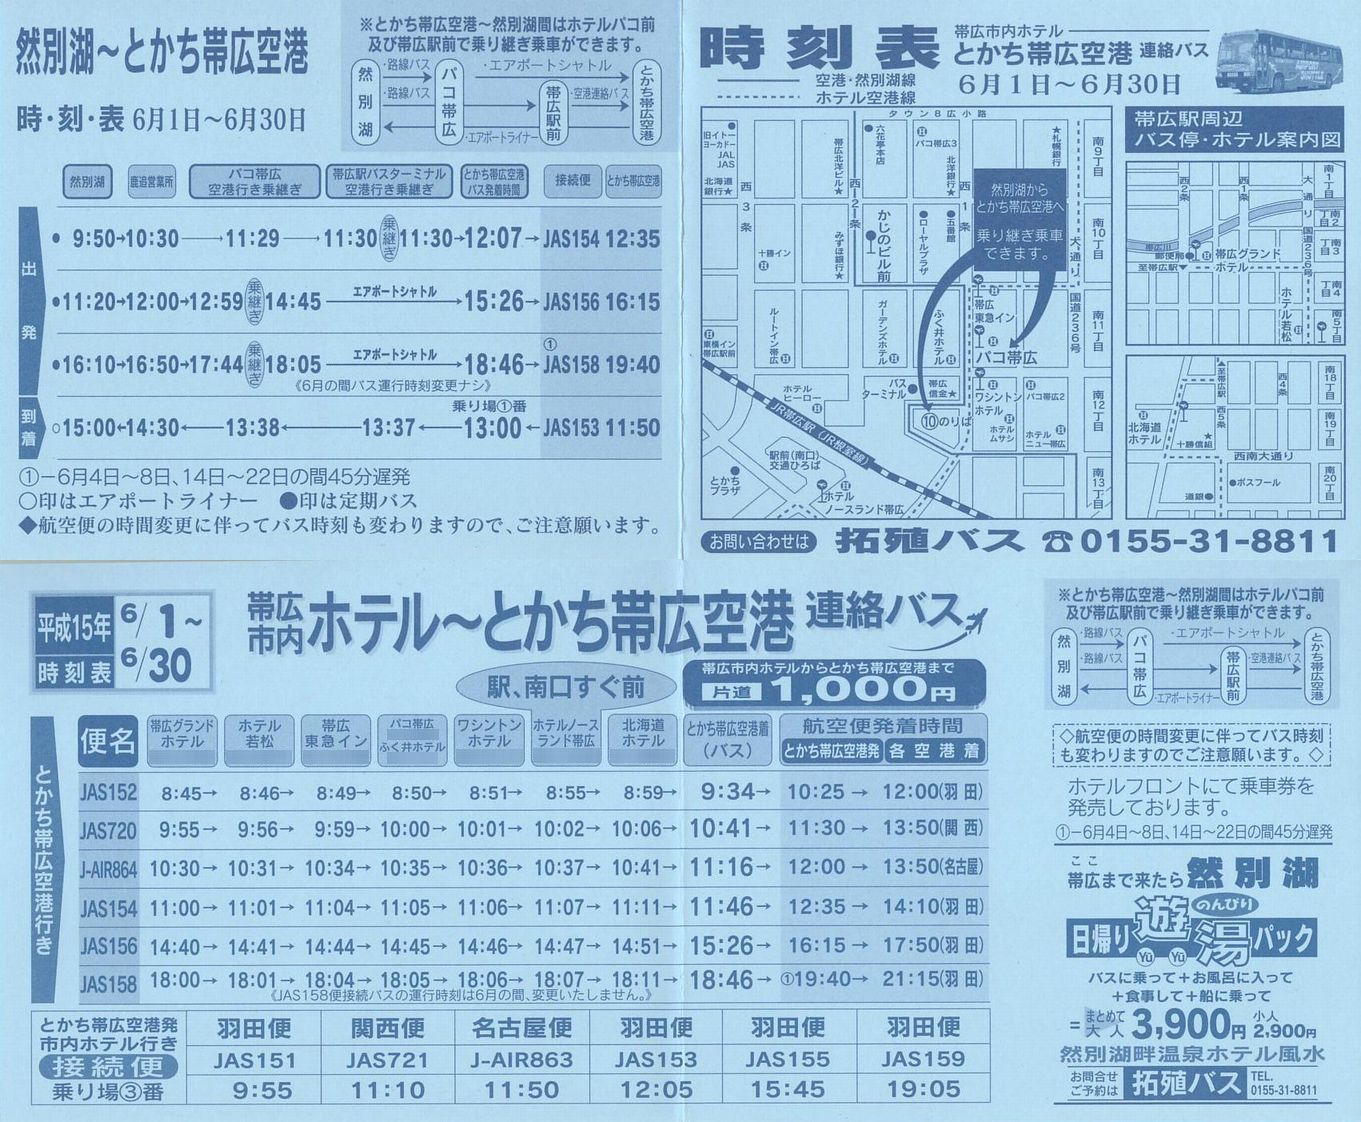 2003-06-01現在_北海道拓殖バス_とかち帯広空港連絡バス時刻表